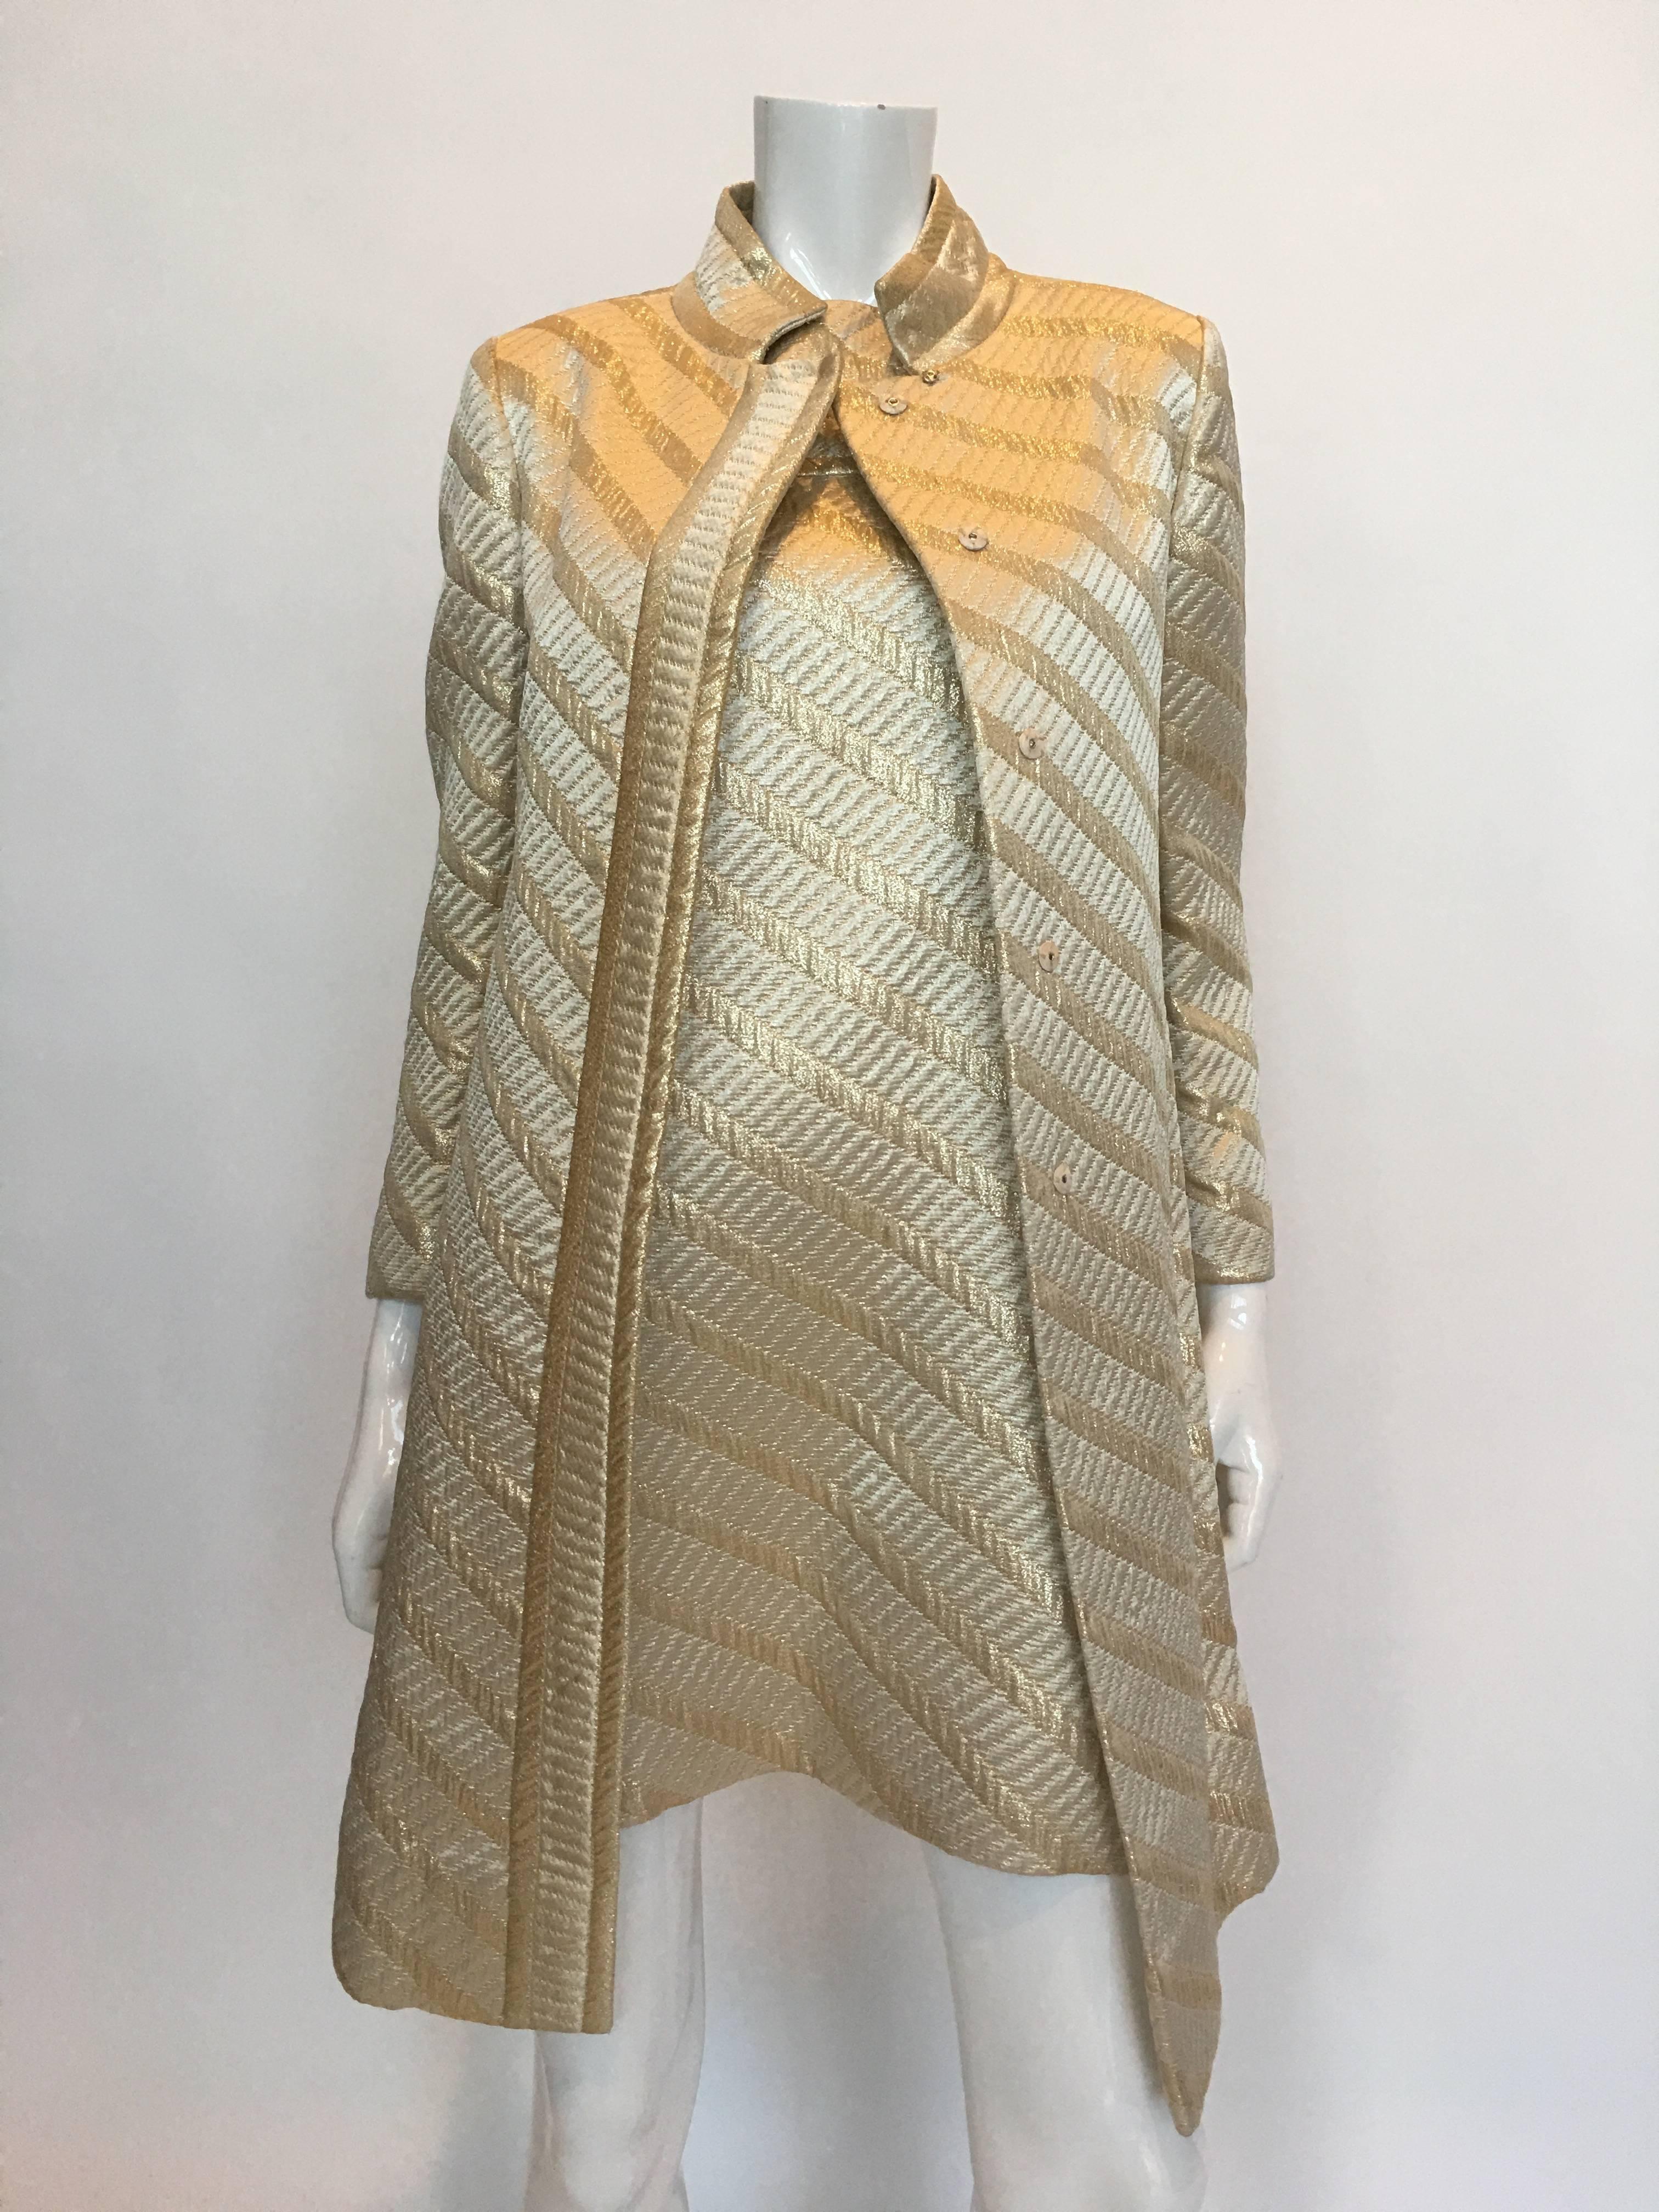 ensemble 2 pièces, manteau et robe dorés, style Jackie O des années 1960 
Fabriqué aux États-Unis - Label de l'Union

Étiquette de taille : 
Veste - 9 
Robe - 10

Veste :
Epaules - Couture à couture : 15